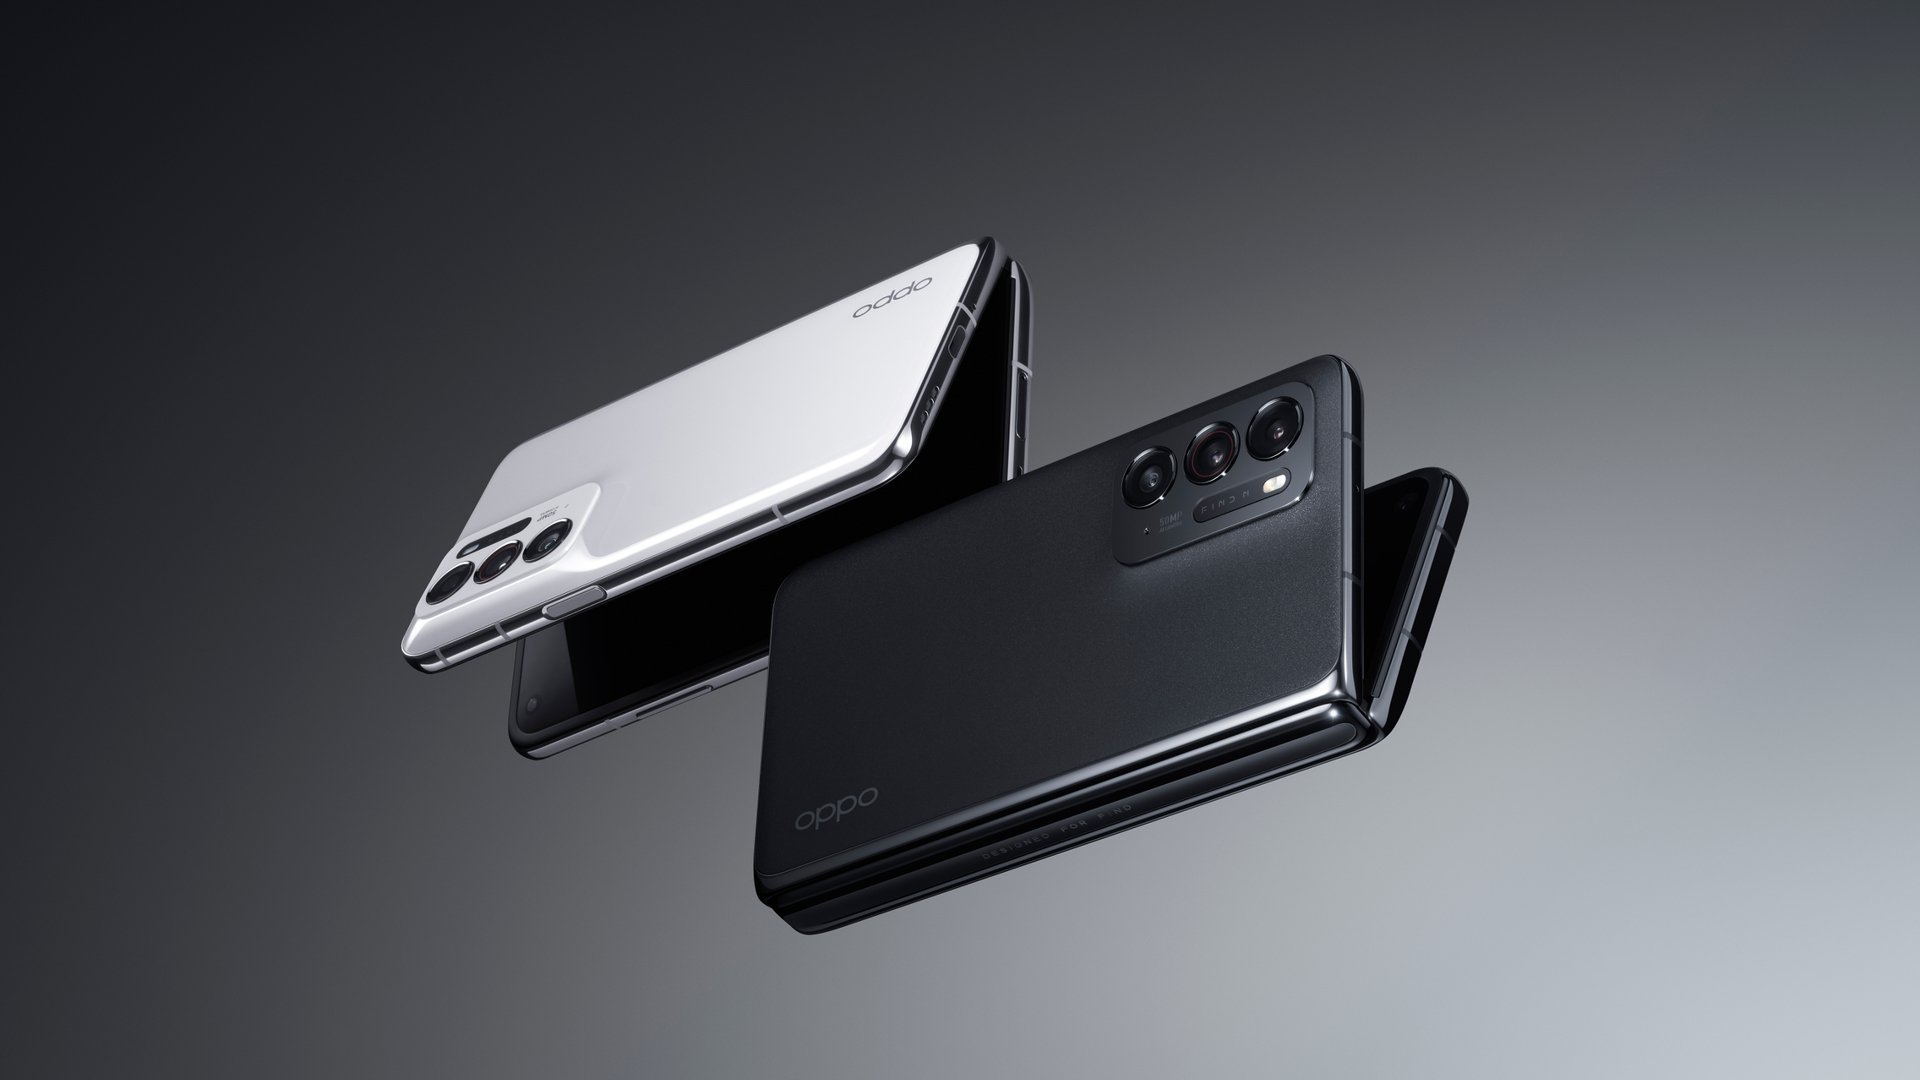  Oppo a prezentat un smartphone pliabil mult mai ieftin decât ceea ce vinde Samsung